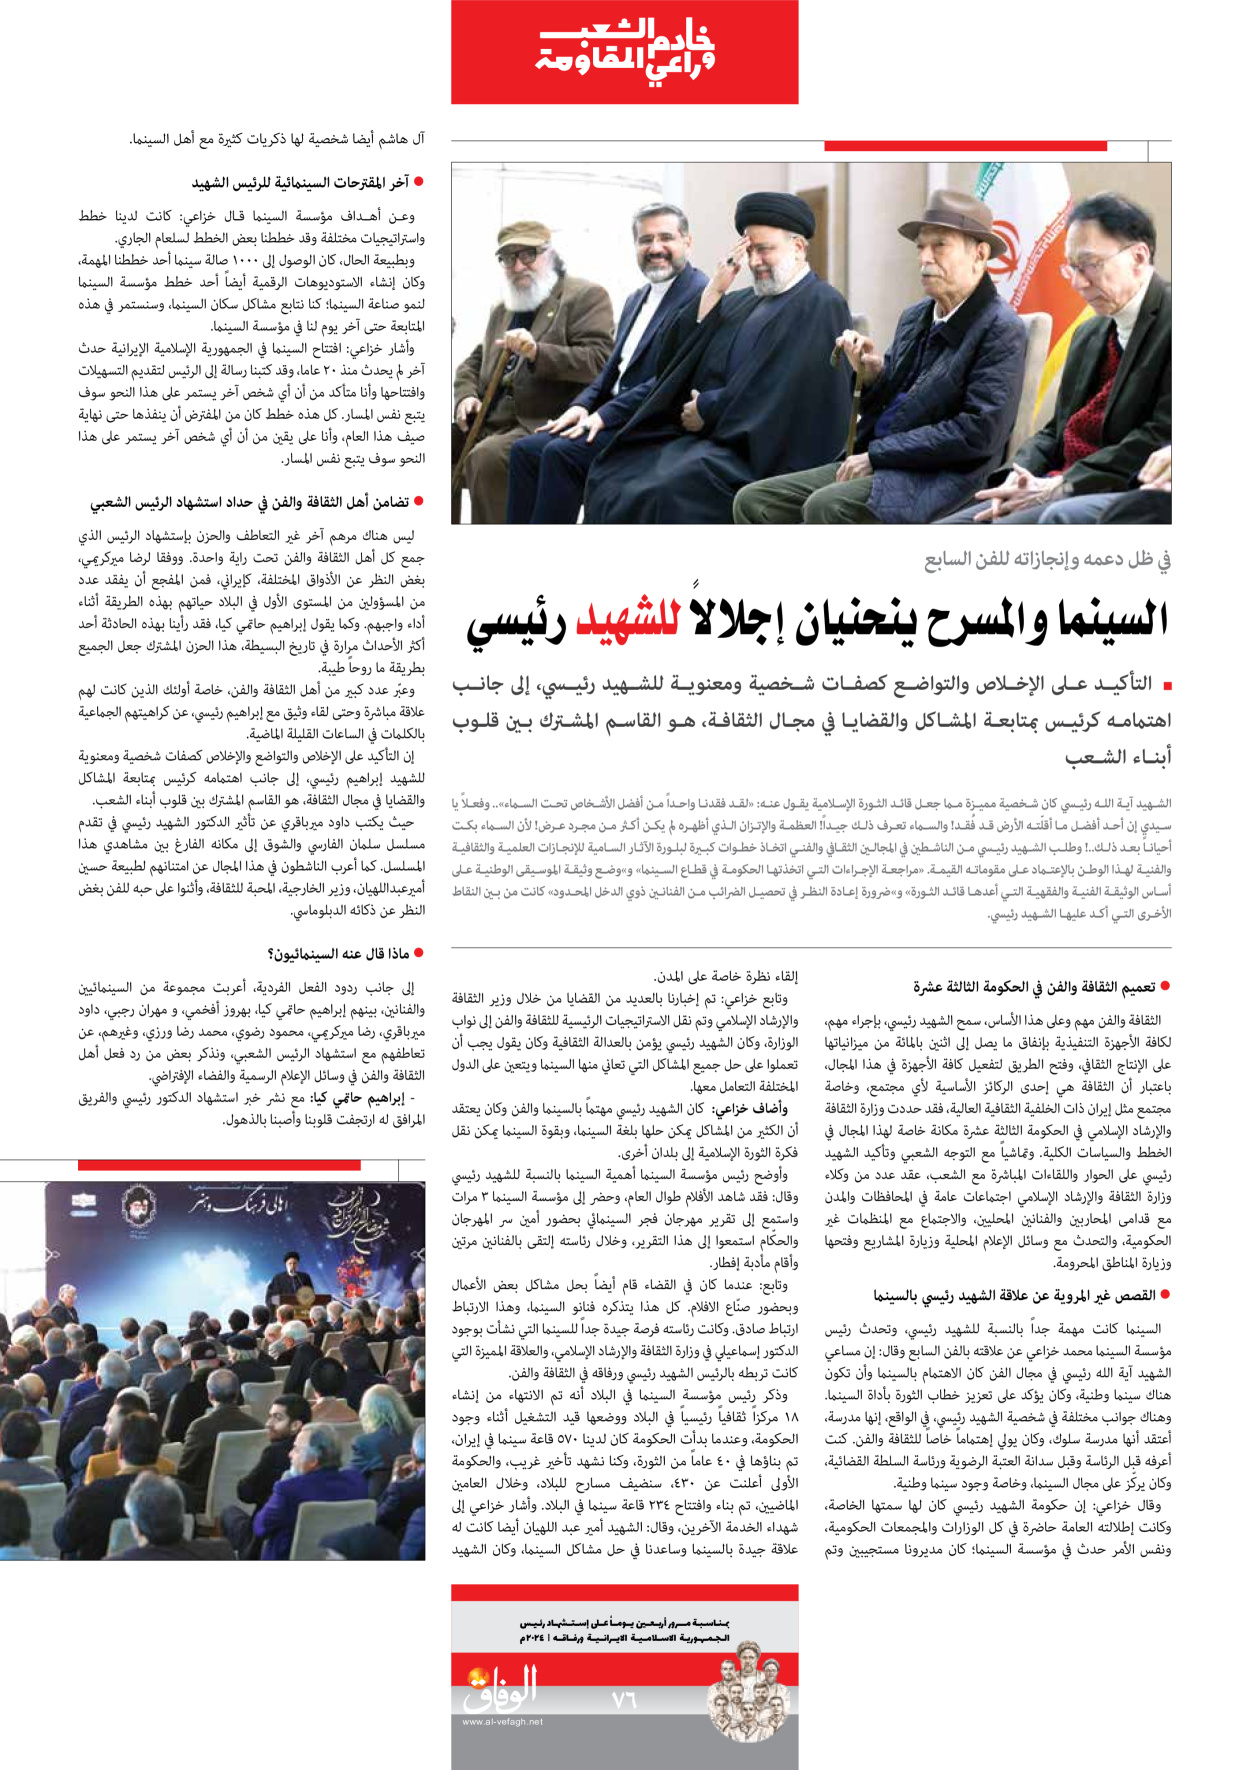 صحیفة ایران الدولیة الوفاق - ملحق ویژه نامه چهلم شهید رییسی - ٢٩ يونيو ٢٠٢٤ - الصفحة ۷٦